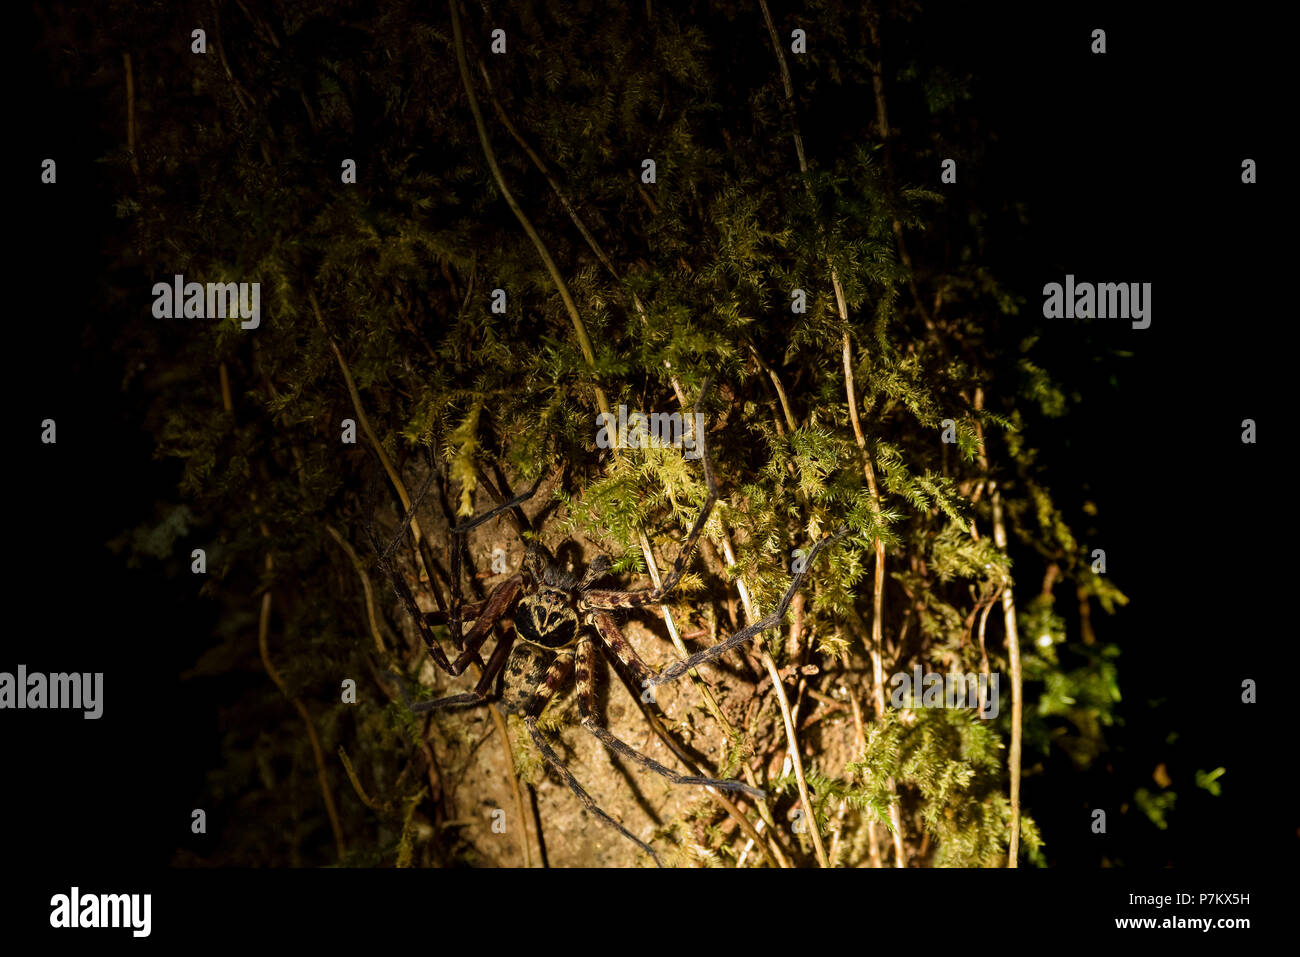 Tarantula indonésiennes, photo de nuit Banque D'Images